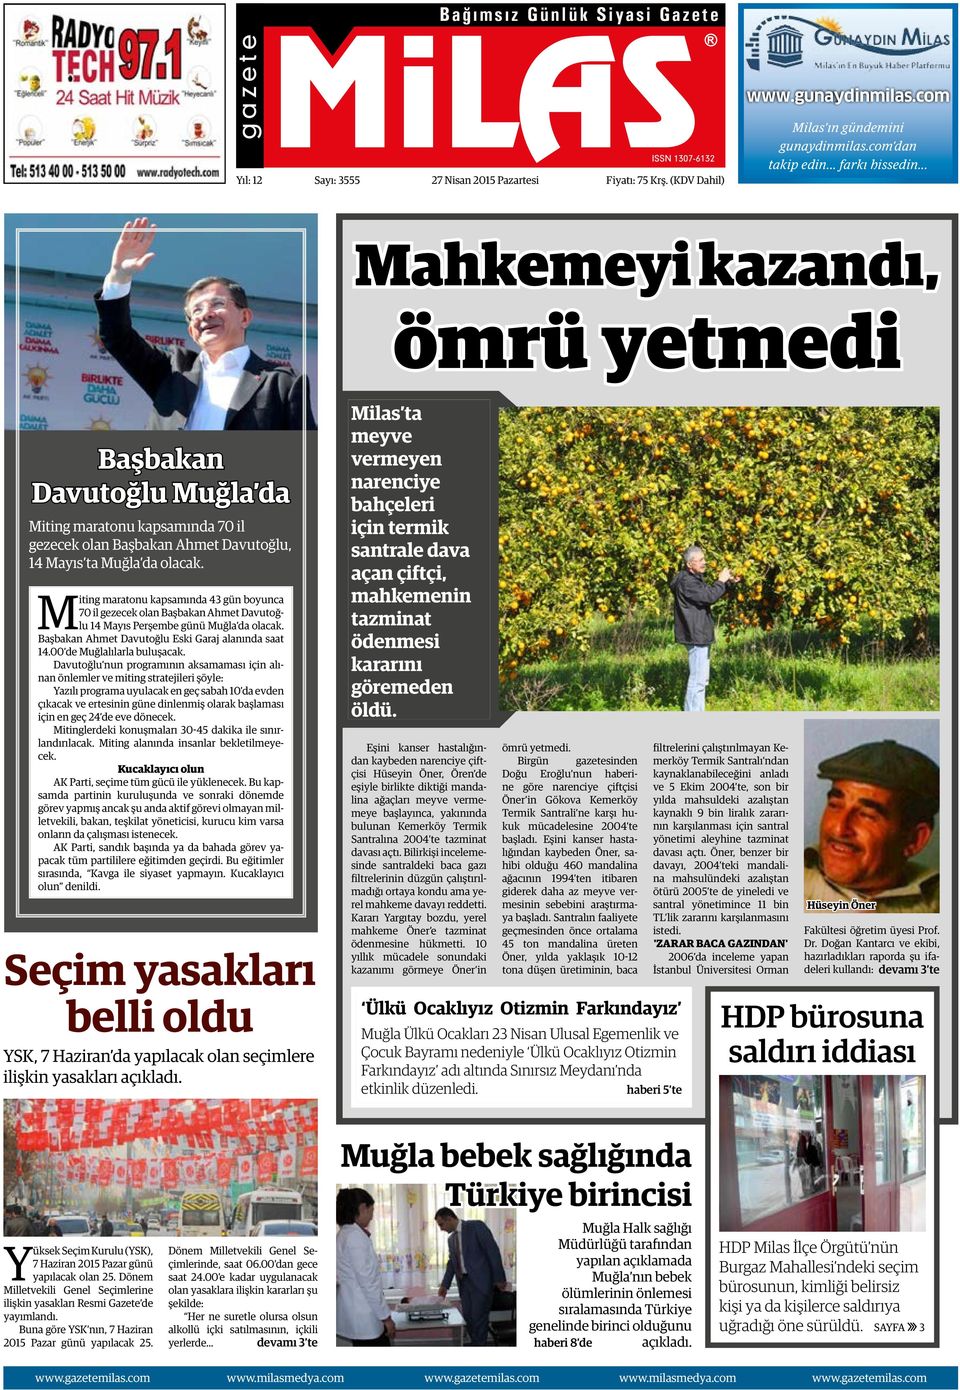 Miting maratonu kapsamında 43 gün boyunca 70 il gezecek olan Başbakan Ahmet Davutoğlu 14 Mayıs Perşembe günü Muğla da olacak. Başbakan Ahmet Davutoğlu Eski Garaj alanında saat 14.